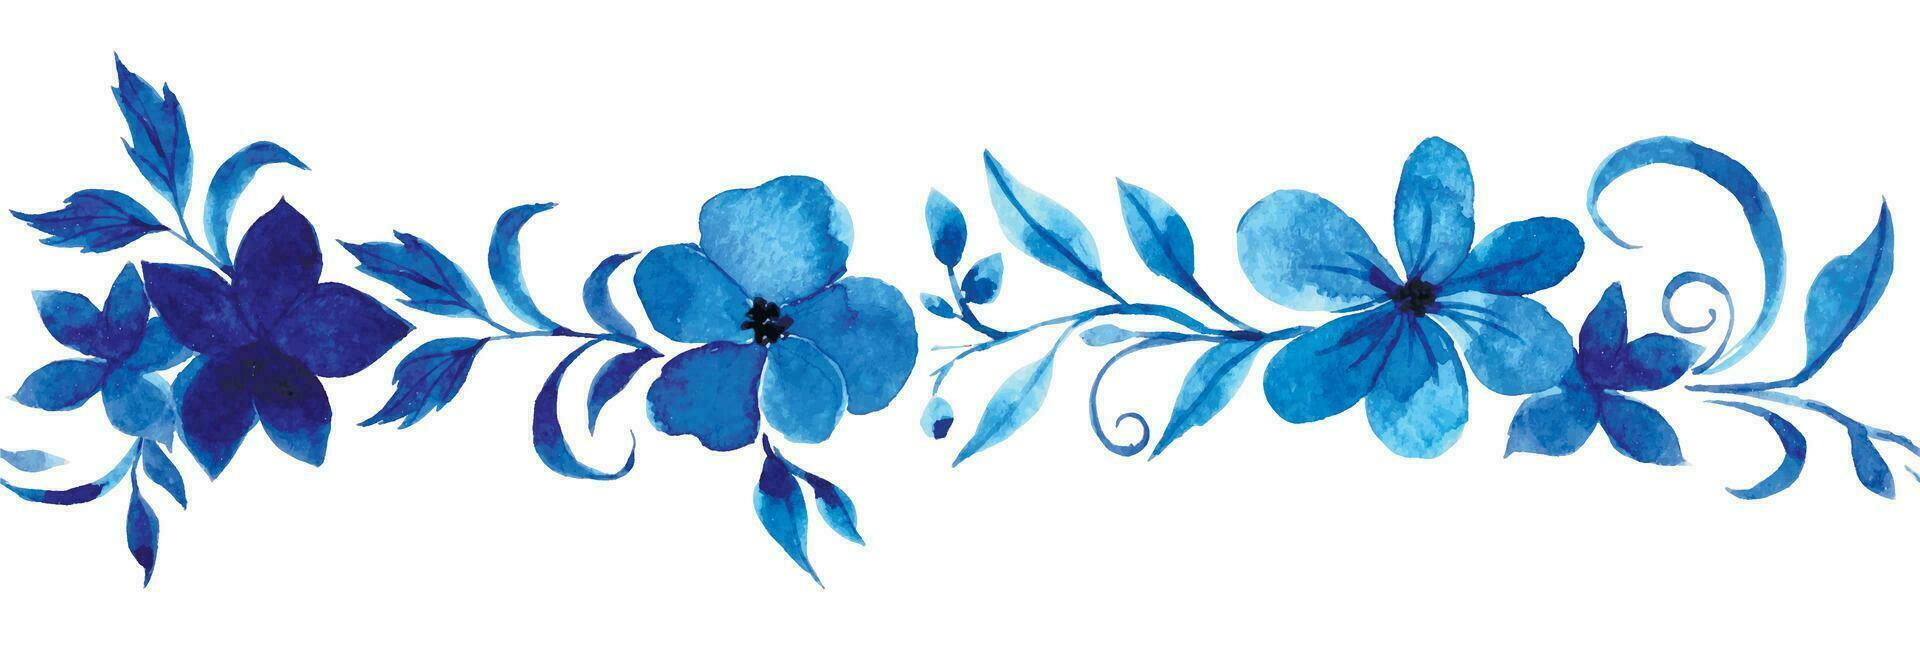 vattenfärg teckning, blå prydnad av blommor och löv, gzhel. abstrakt blommor vektor